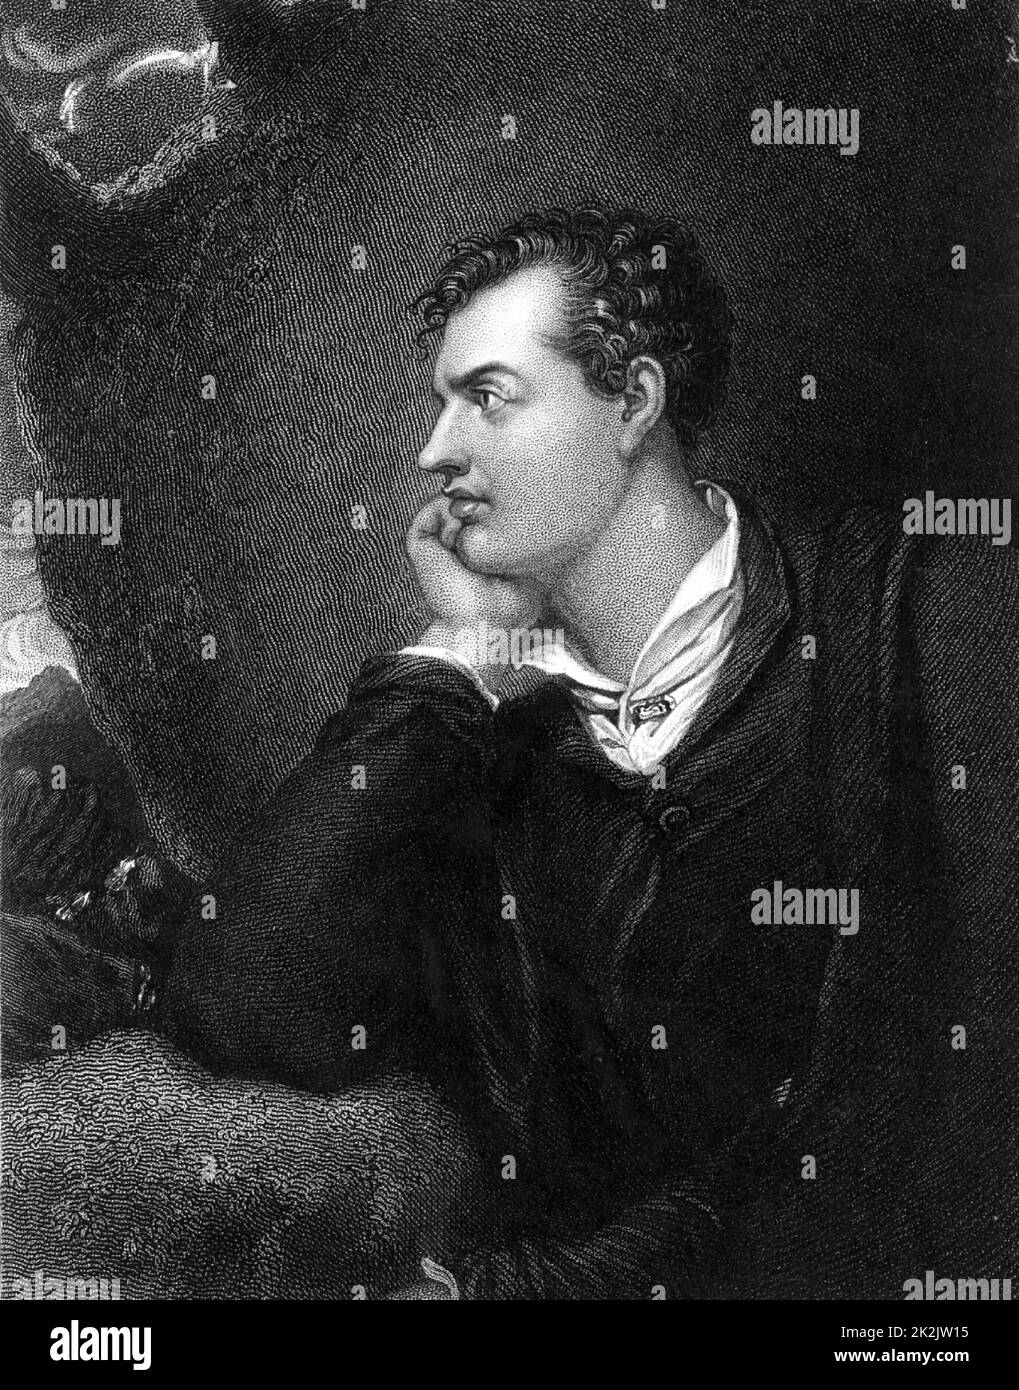 George Gordon, Lord Byron (1788-1824) poeta romantico inglese di discendenza scozzese. Incisione dopo il ritratto di Richard Westall. Foto Stock